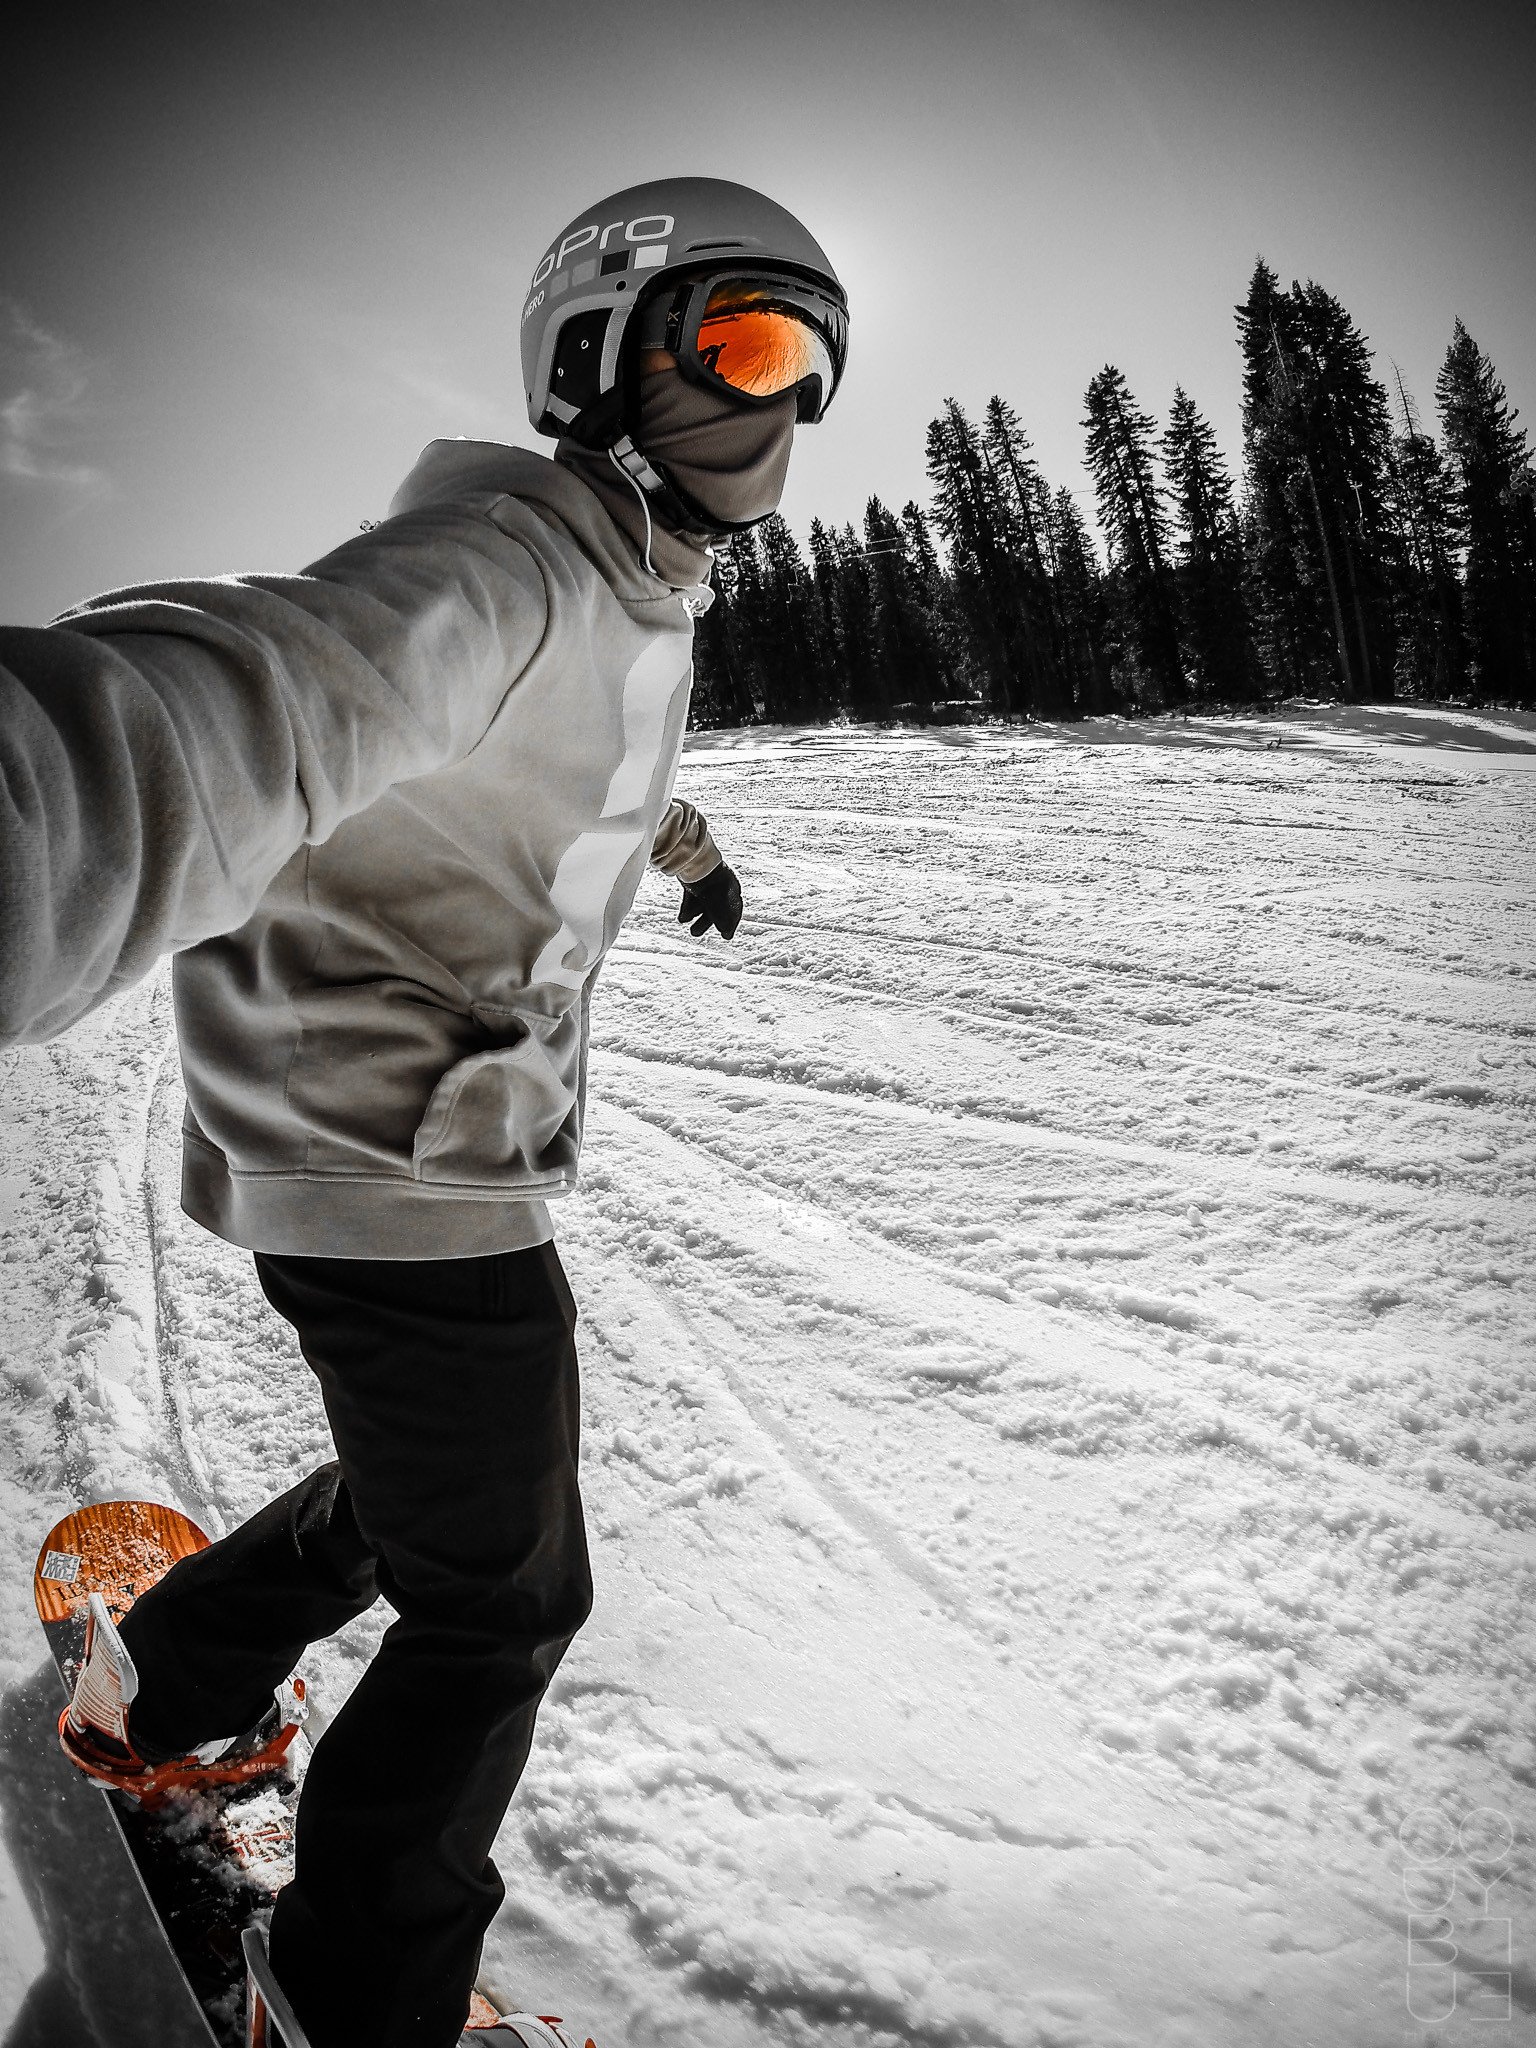 Фото для телеграмма. Сноуборд. Мужчина на сноуборде. GOPRO сноуборд. Сноубордист на закате.